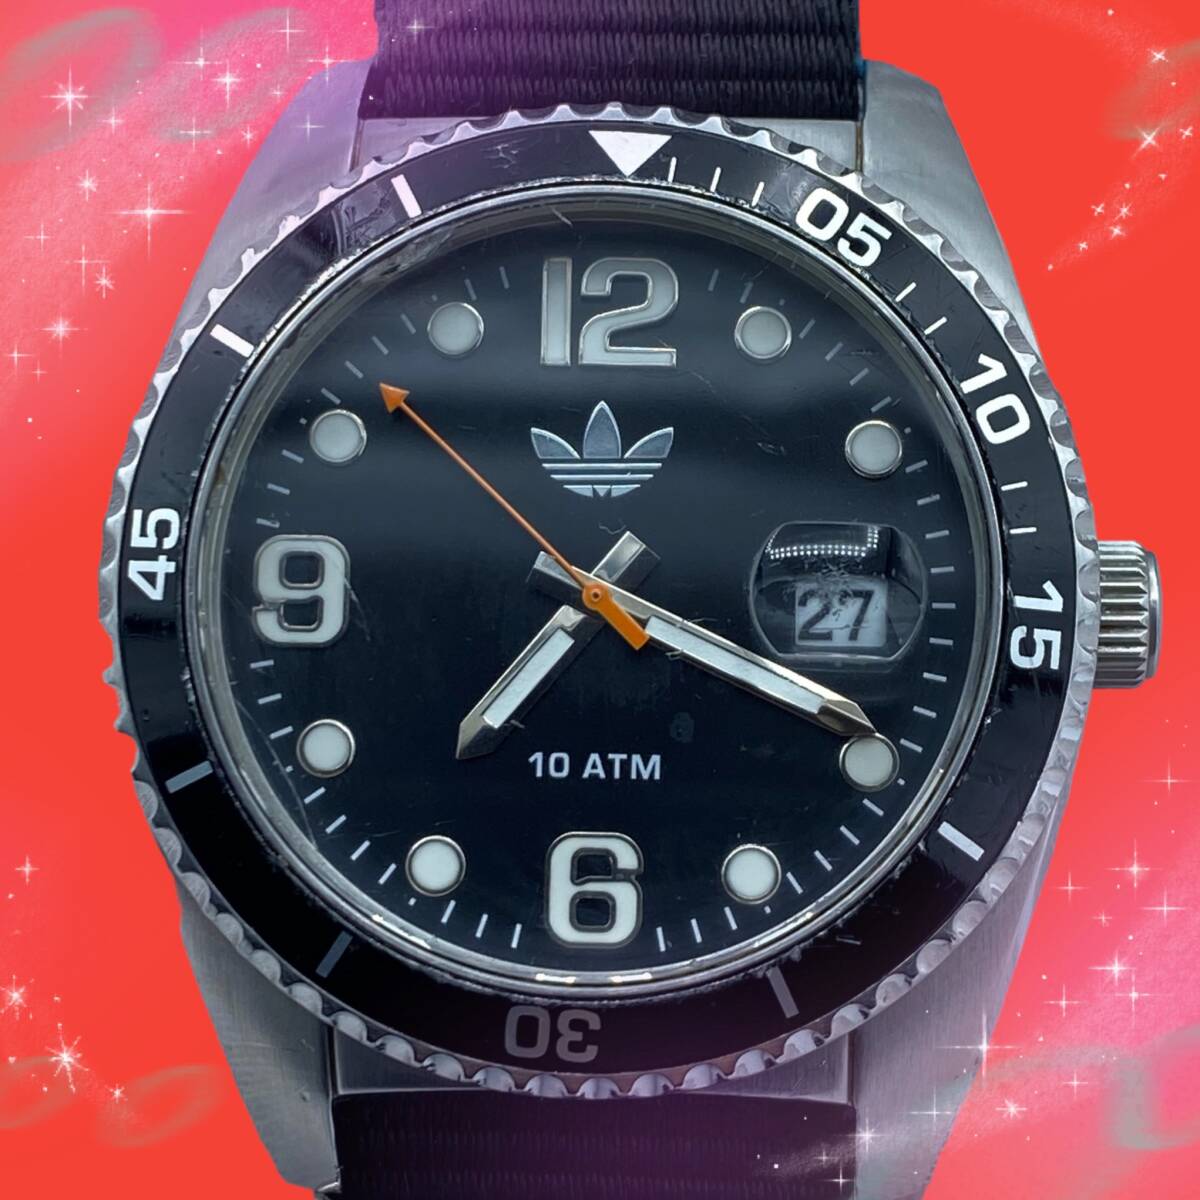 { rare operation goods } Adidas adidas Bliss Ben Divers rotation bezel Date waterproof men's wristwatch black face quarts 